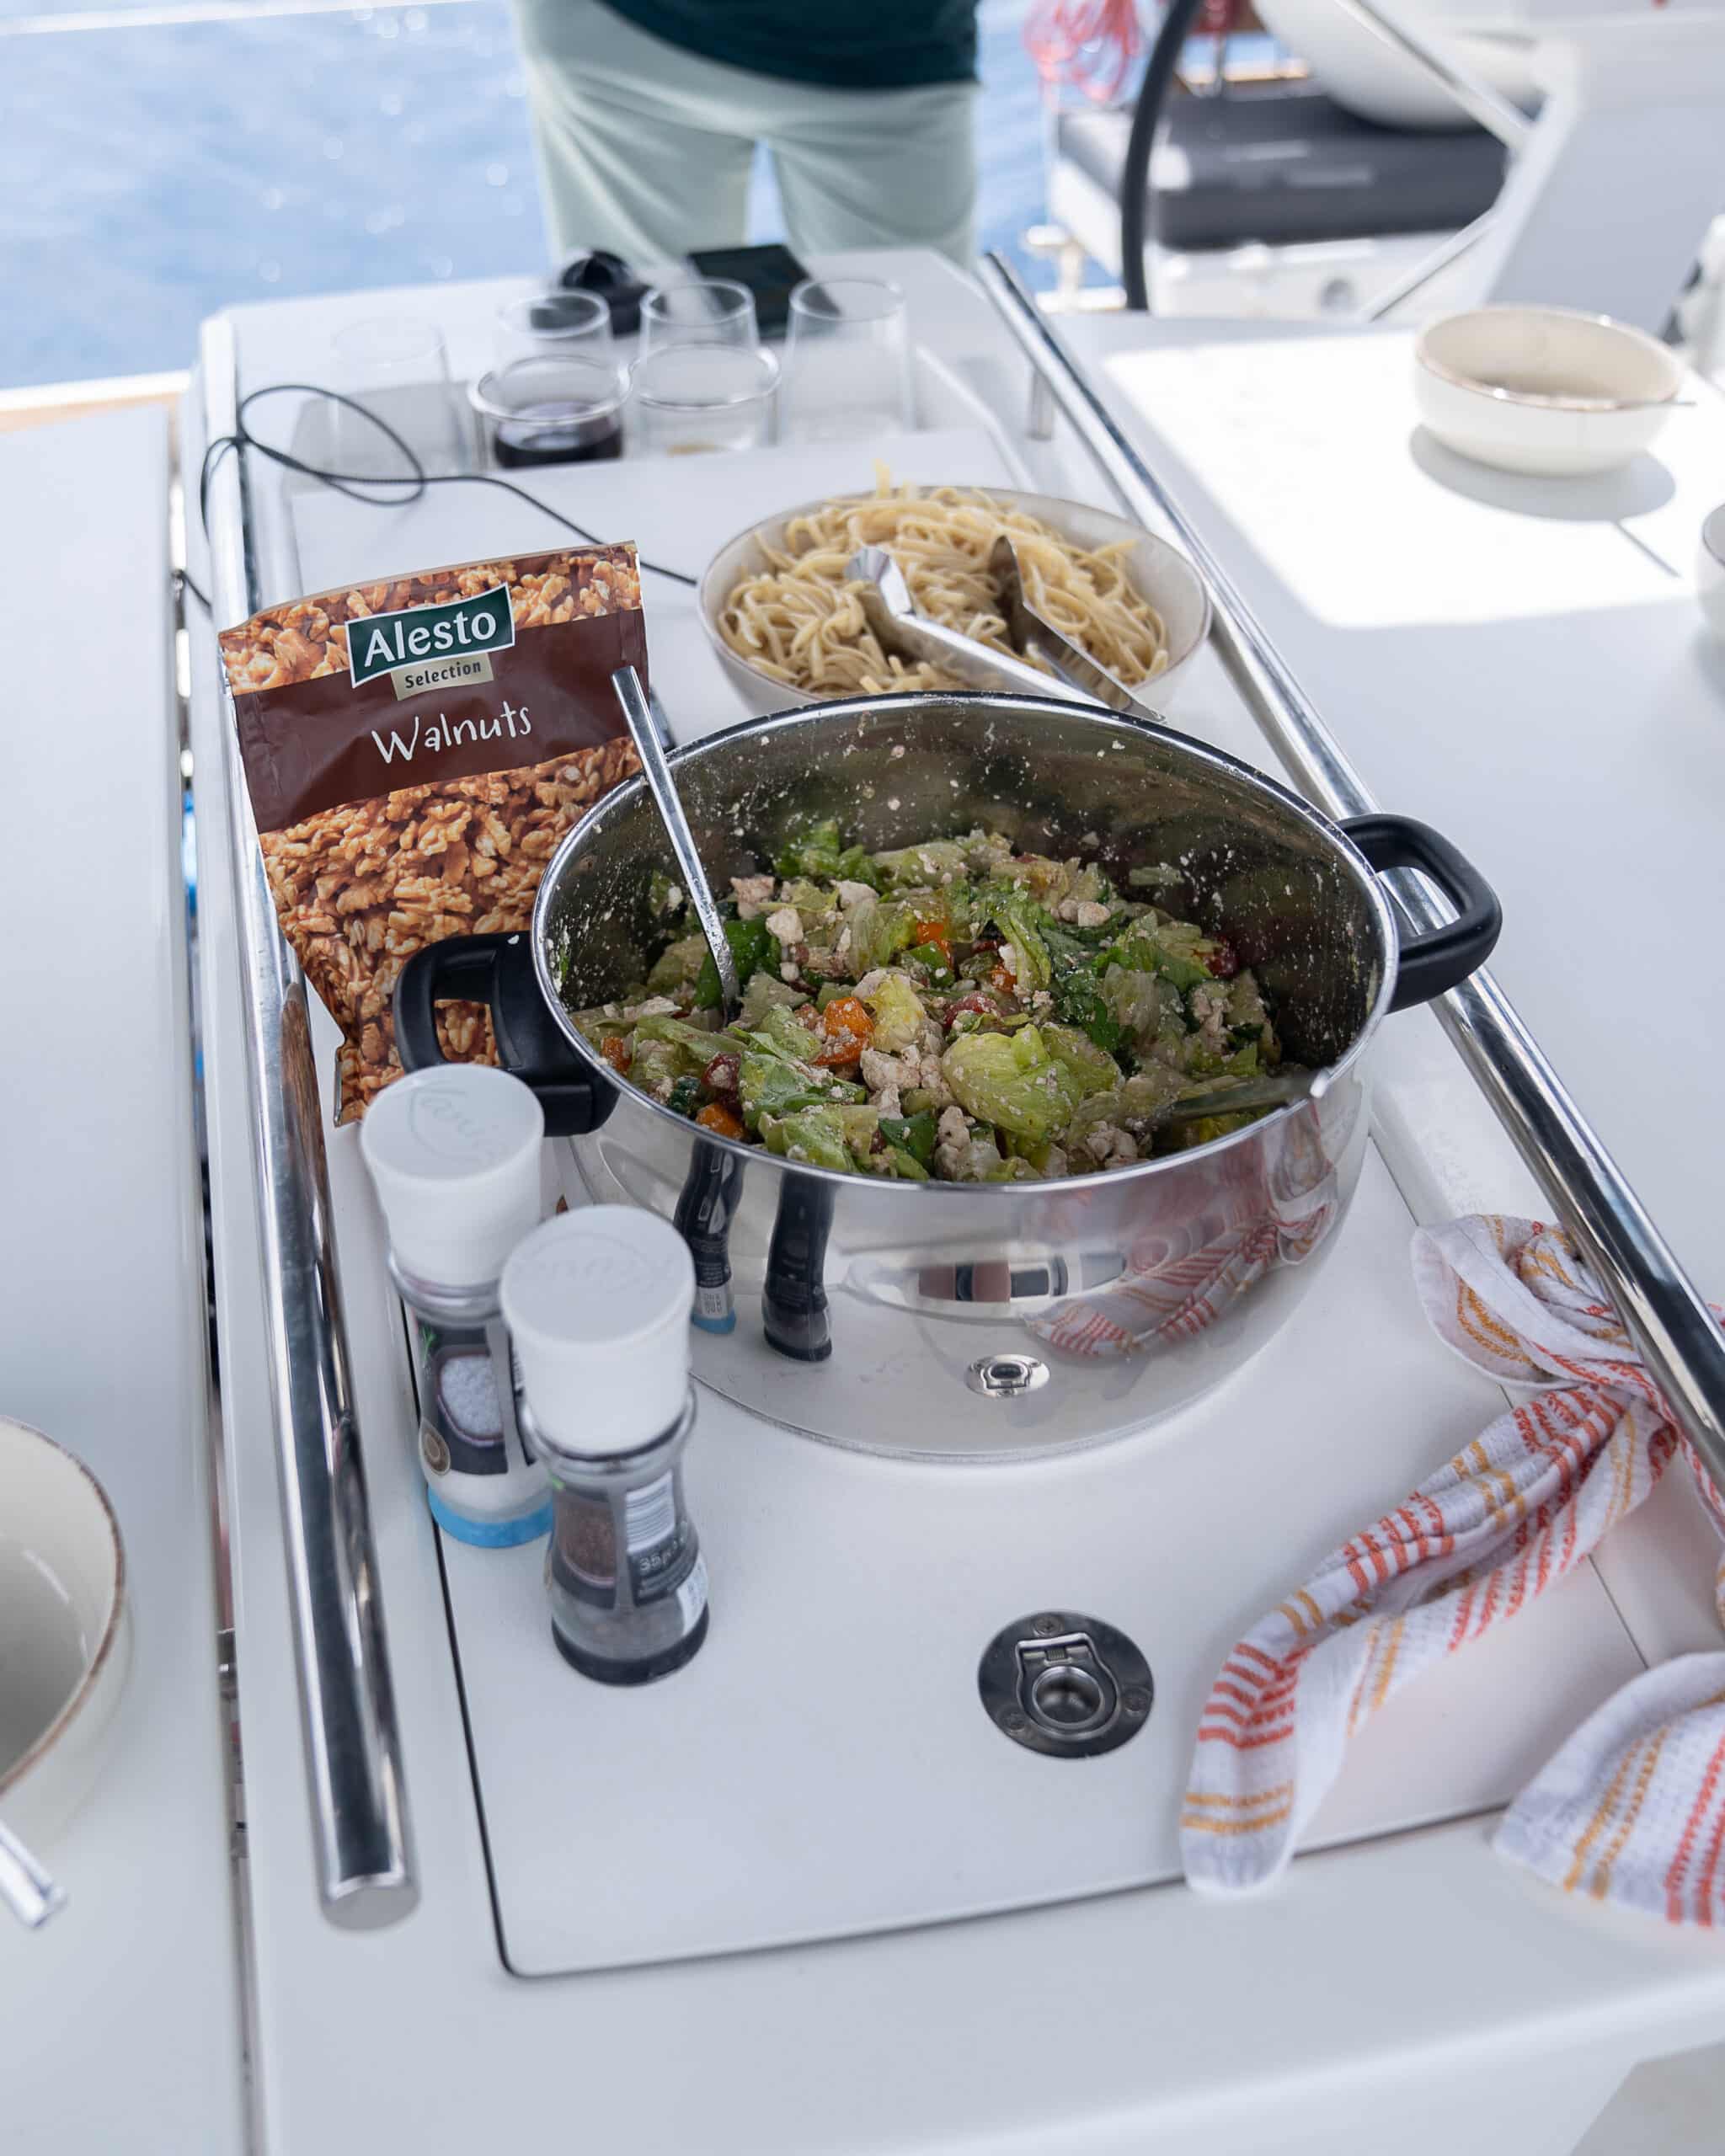 Eine Kochstation auf einem Boot der Youngline Segelreise besteht aus einem Topf mit einer Gemüse-Walnuss-Mischung, umgeben von Schüsseln mit ungekochten Spaghetti, Gewürzen und einer Packung Alesto-Walnüssen. Im Hintergrund steht eine Person vor einer blauen Meereskulisse.